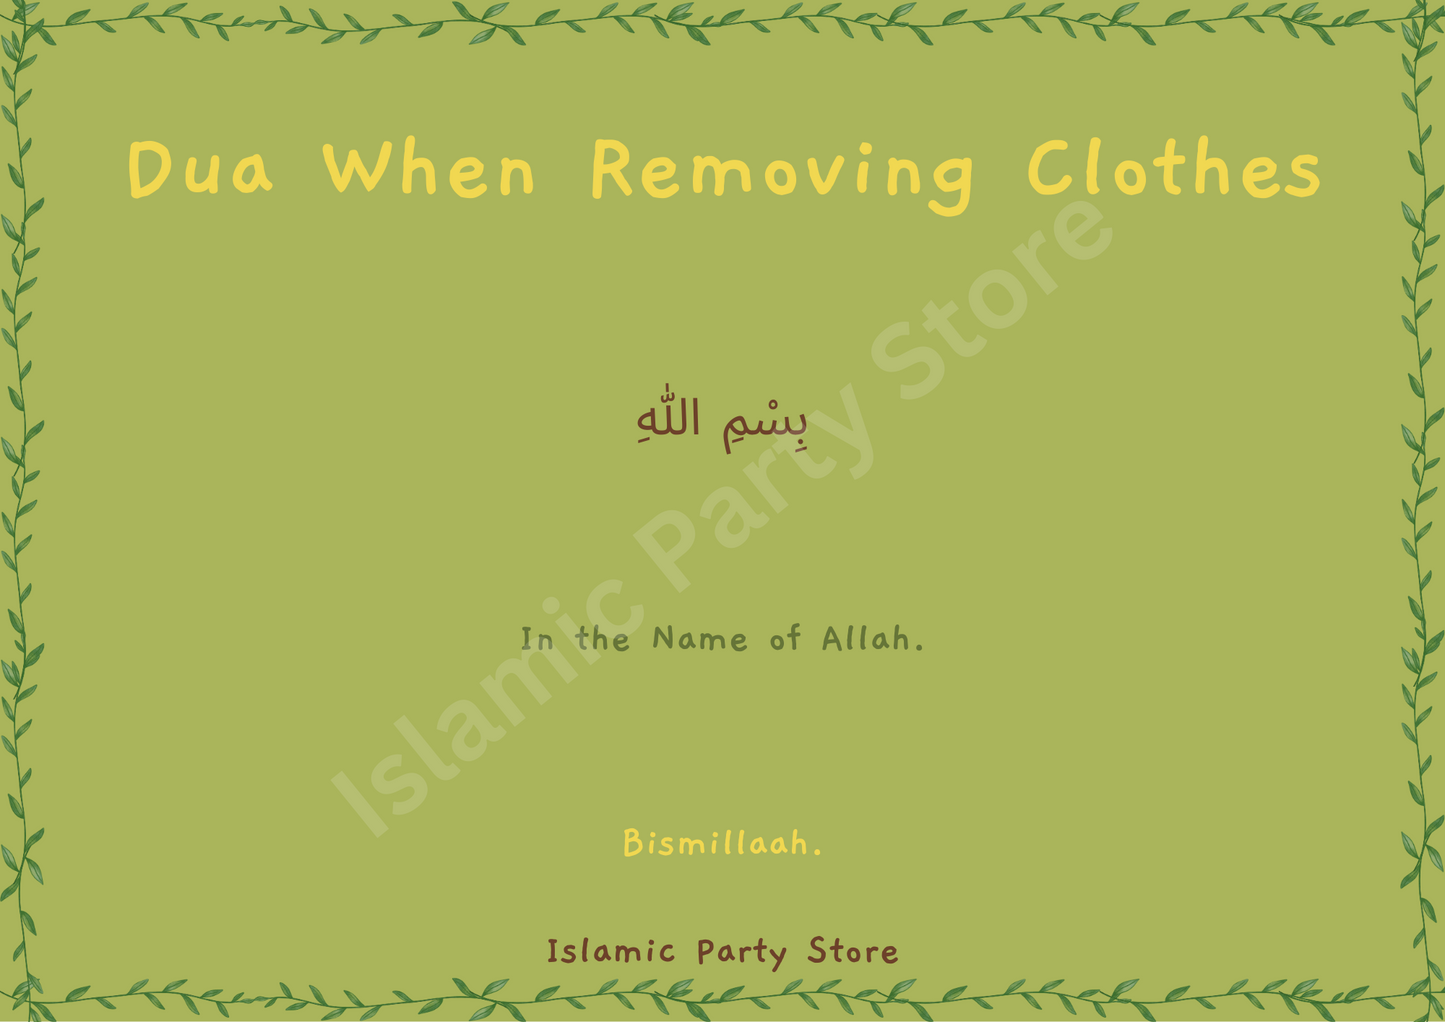 Removing clothes dua